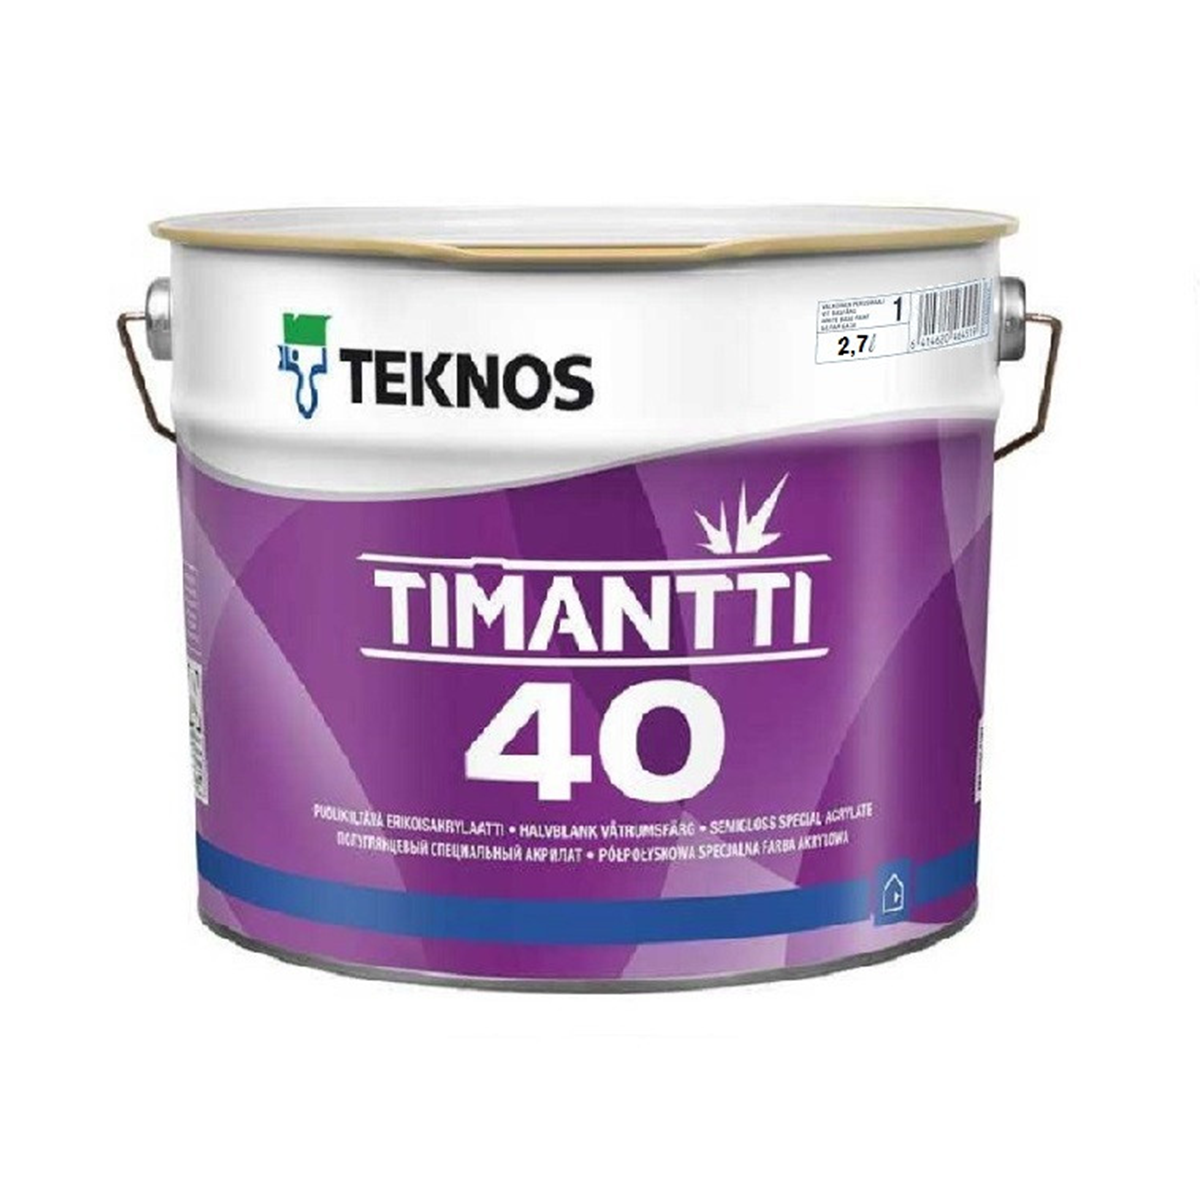 Фарба для кухонь і ванних кімнат Teknos Timantti 40 2.7л